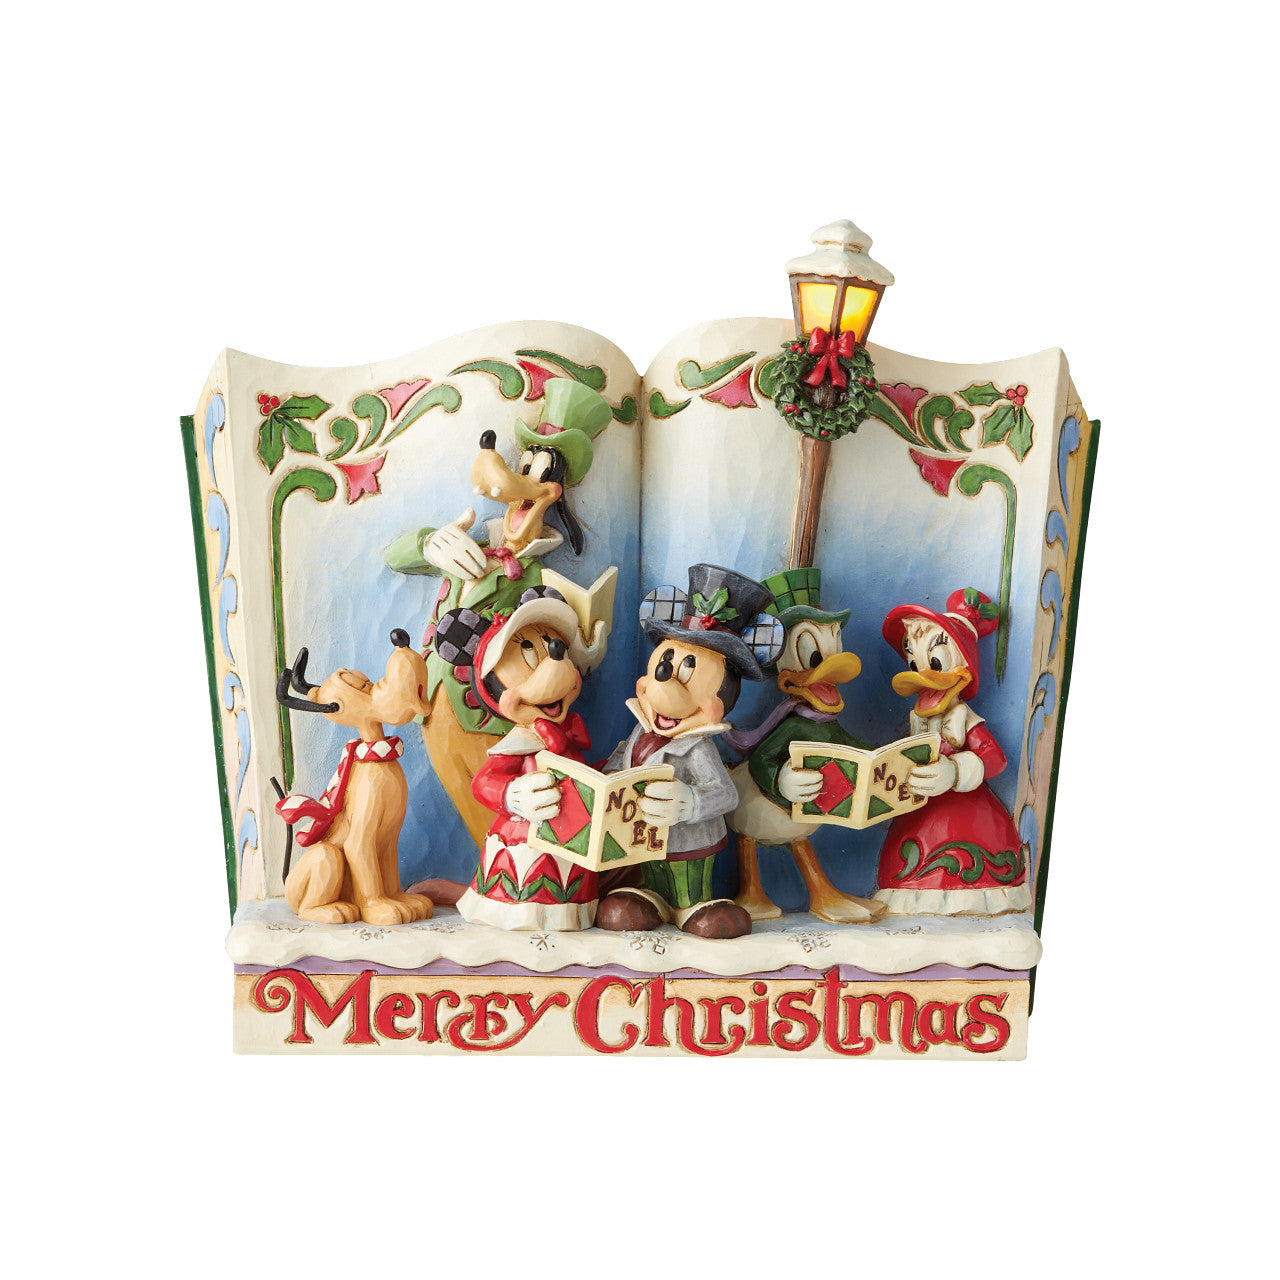 Merry Christmas - Storybook A Christmas Carol